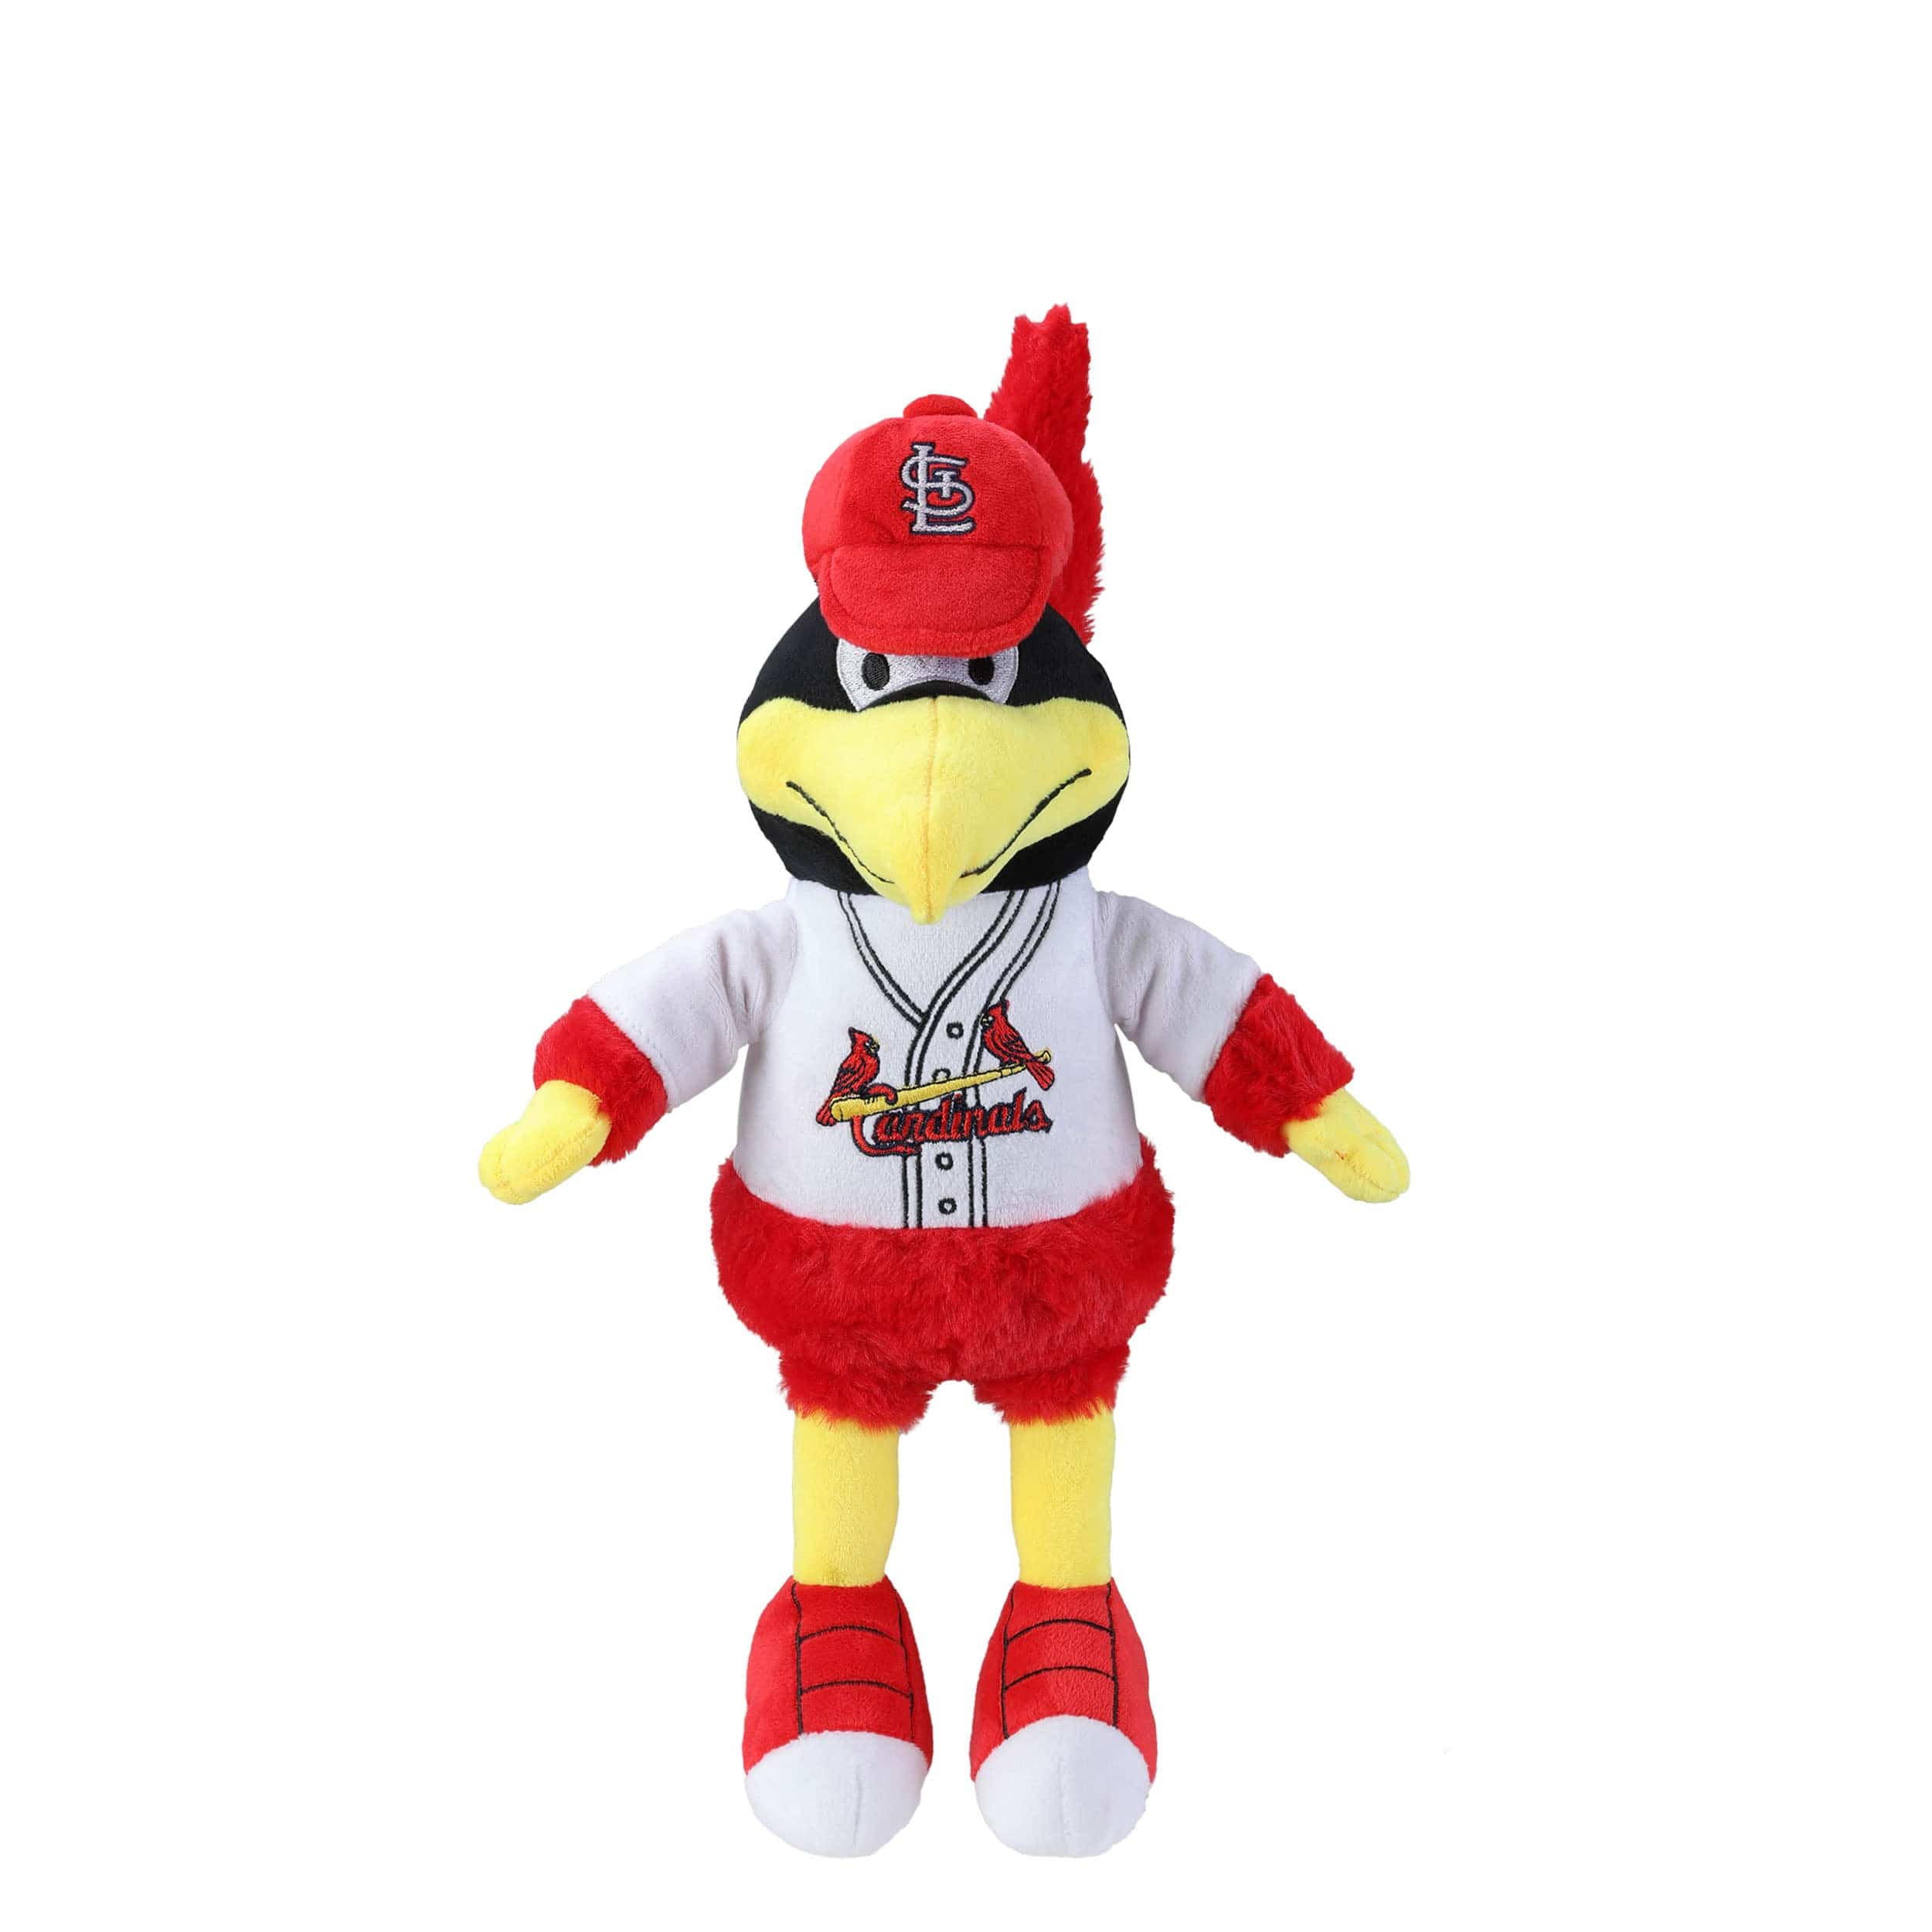 Chicago White Sox Mascot Plush